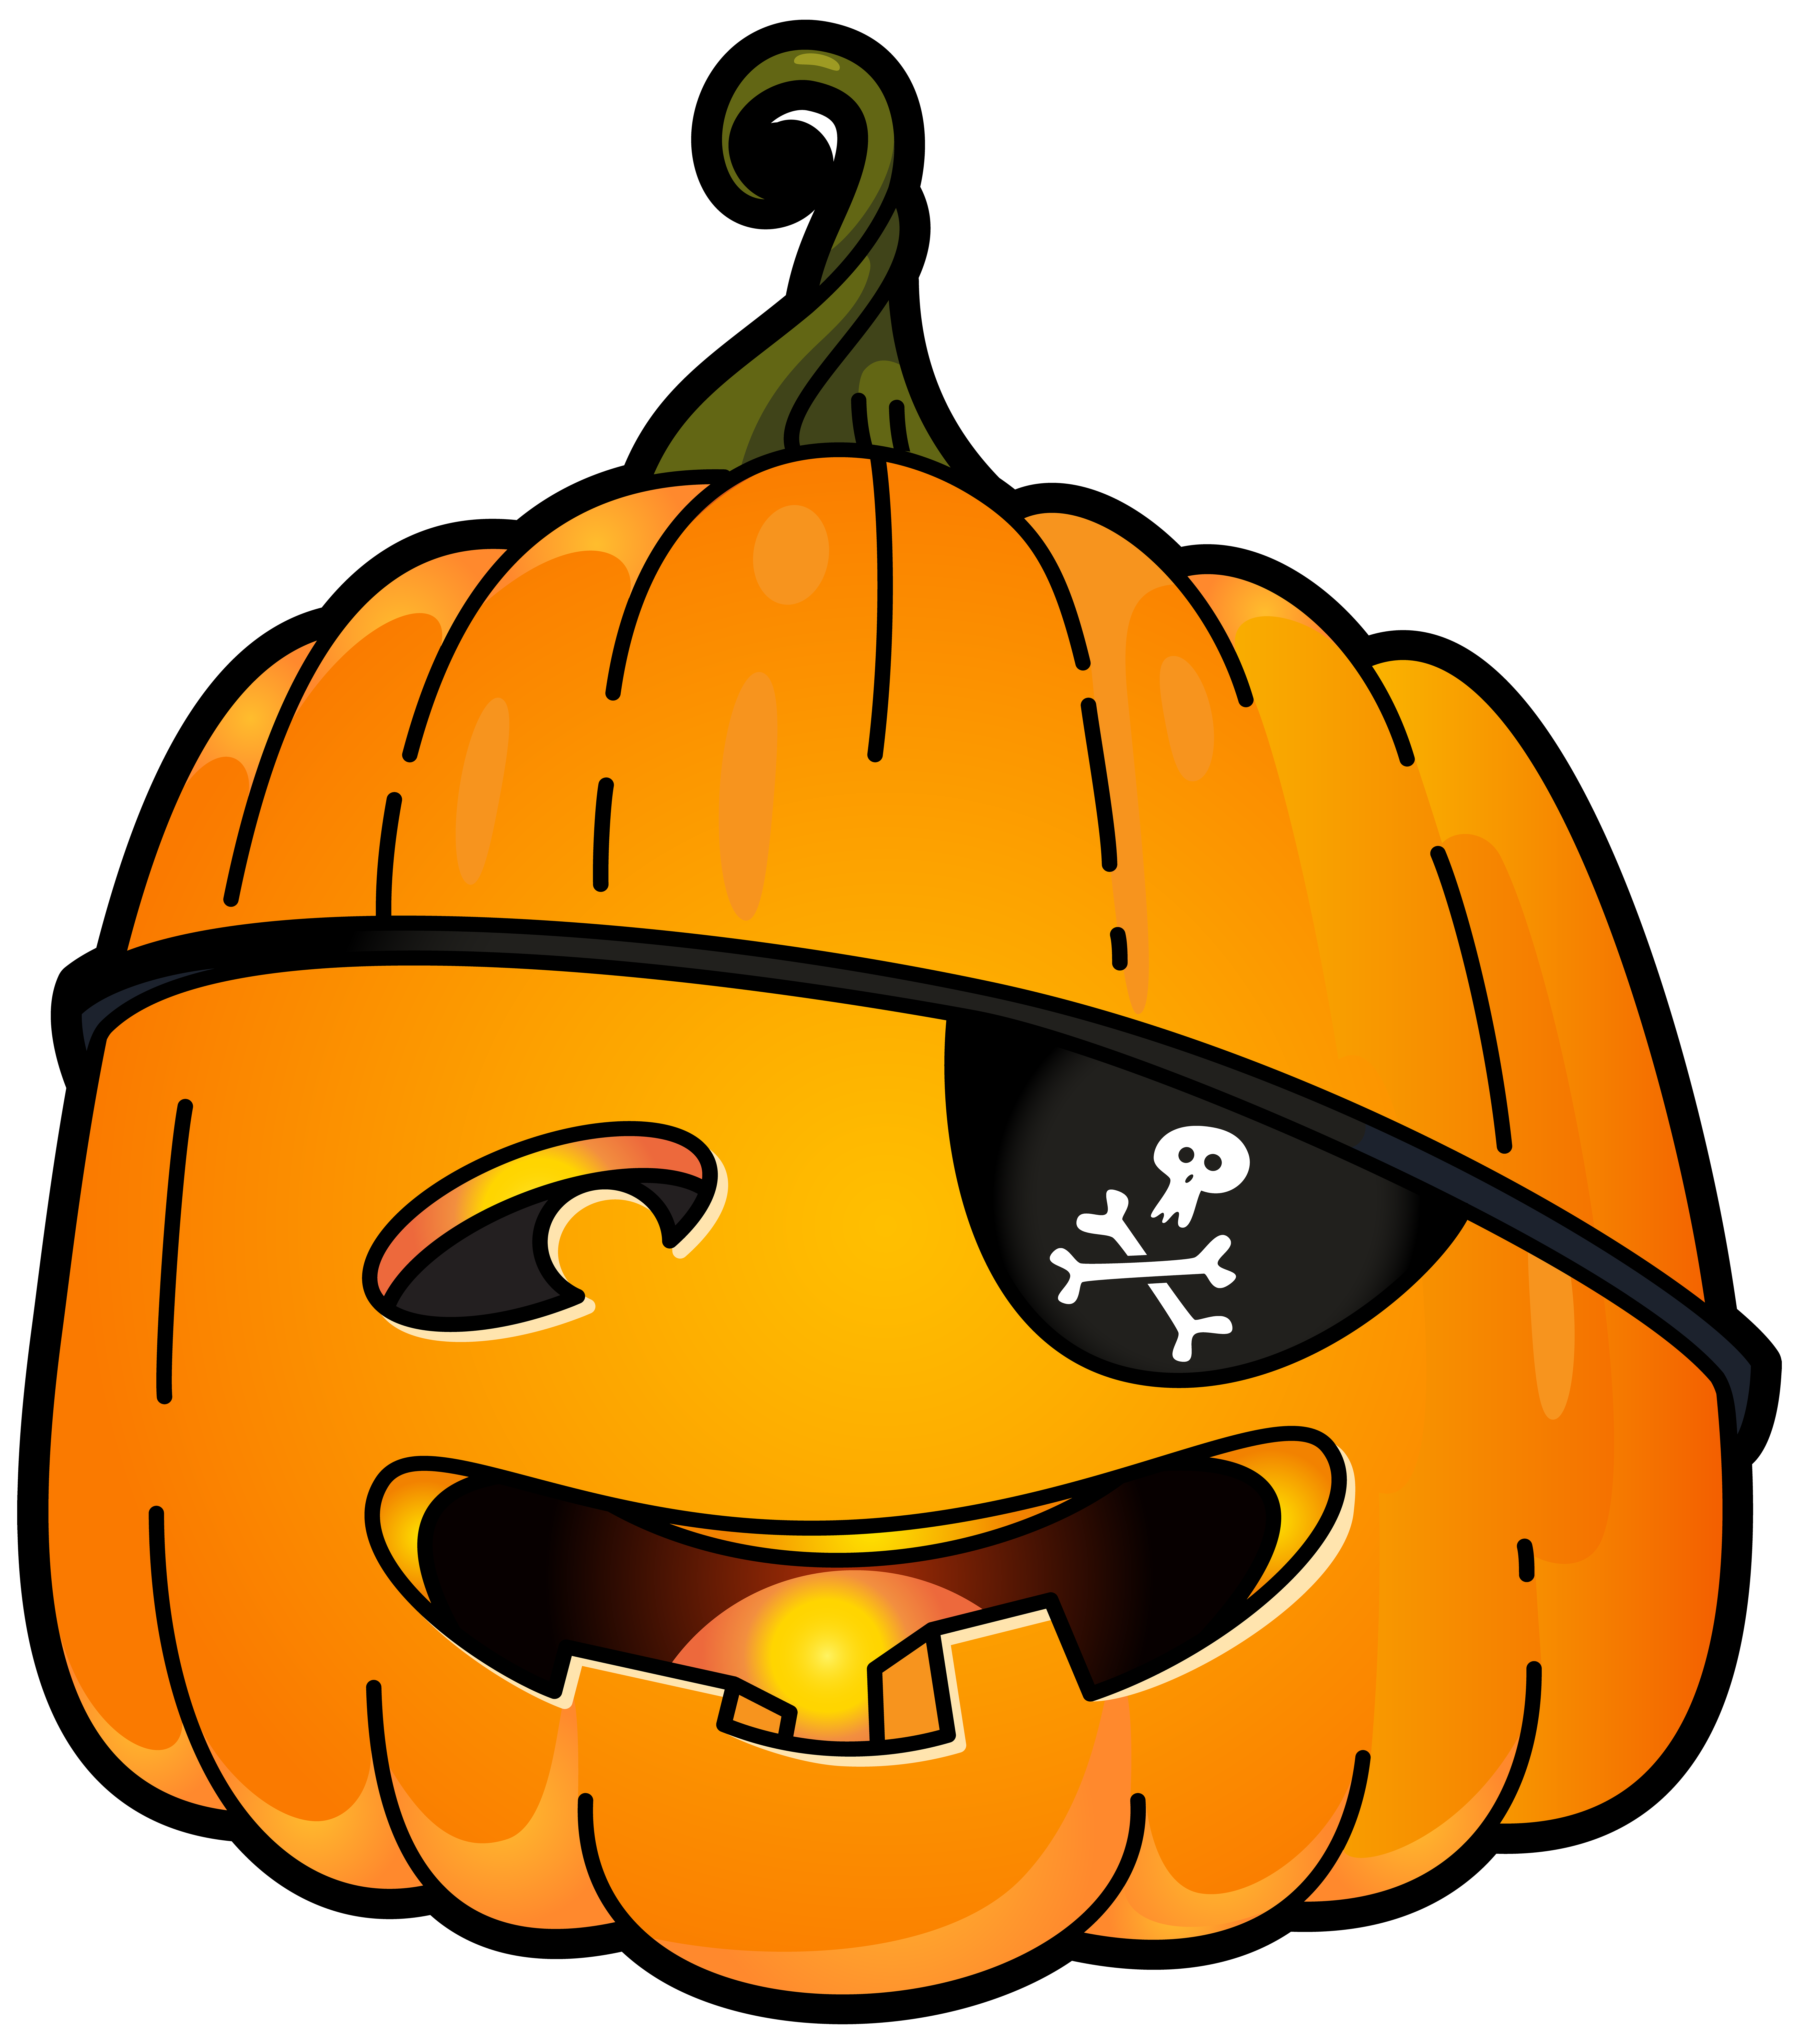 Halloween Pirate Pumpkin PNG Clip Art Image.